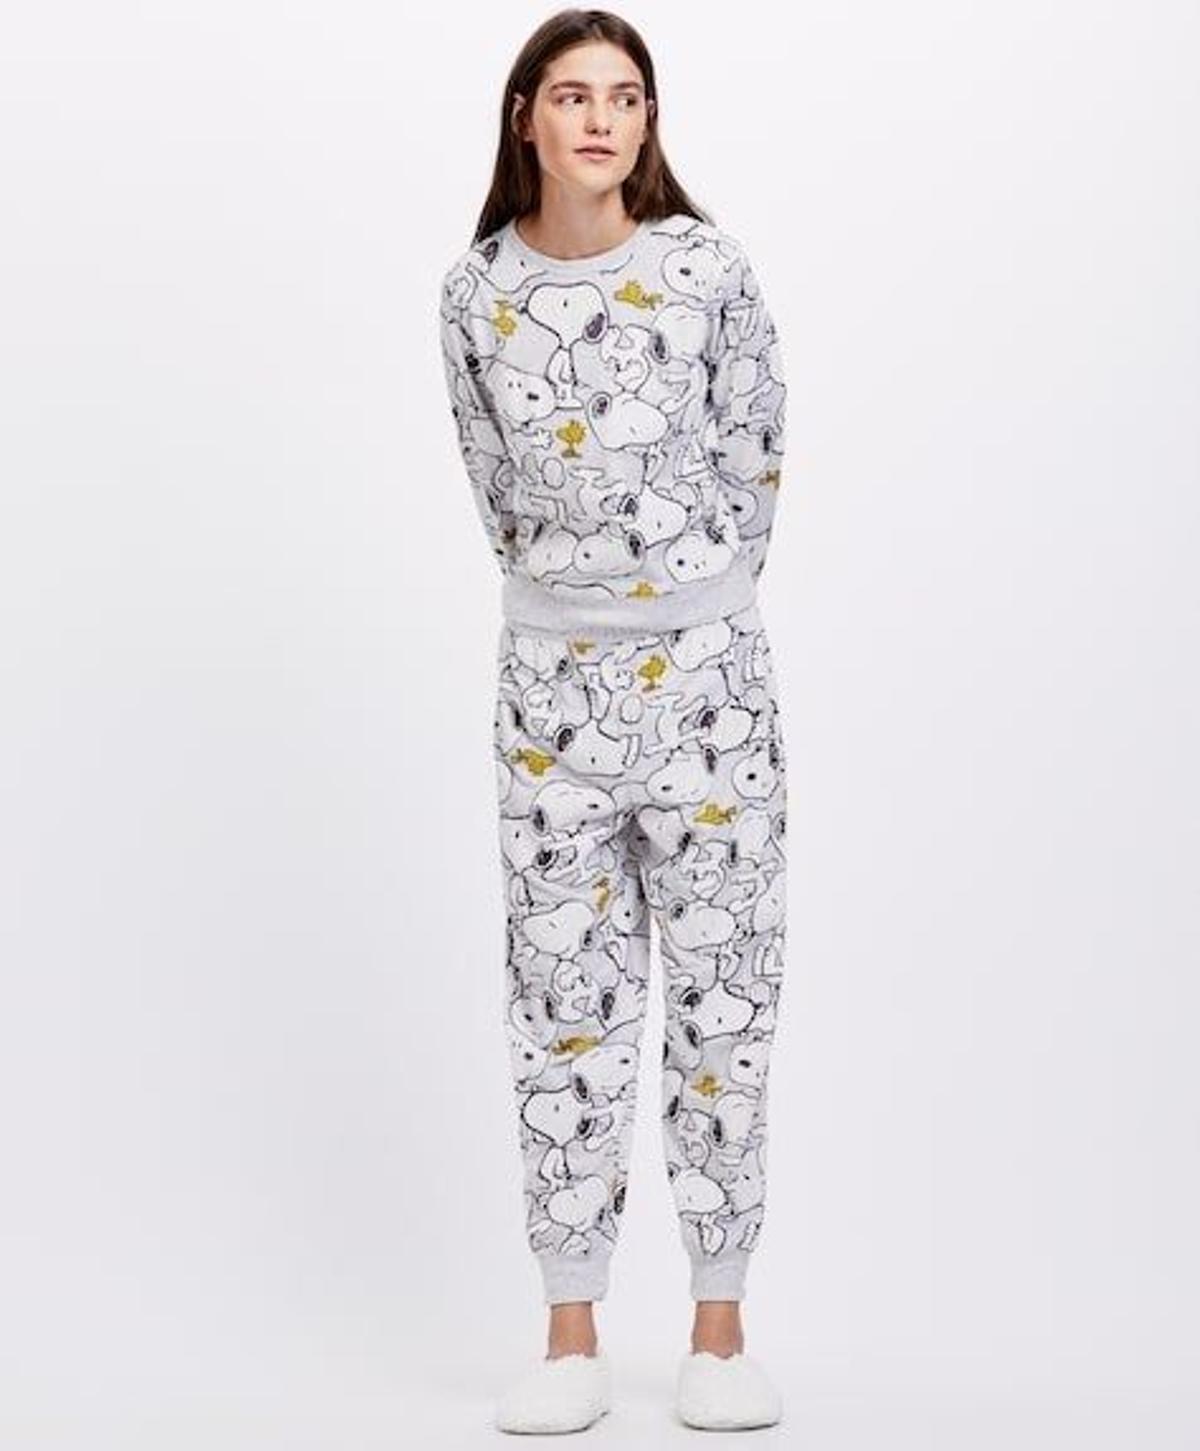 Pijama de Oysho (Precio: 19.99 euros el pantalón y 17,99 euros la sudadera)